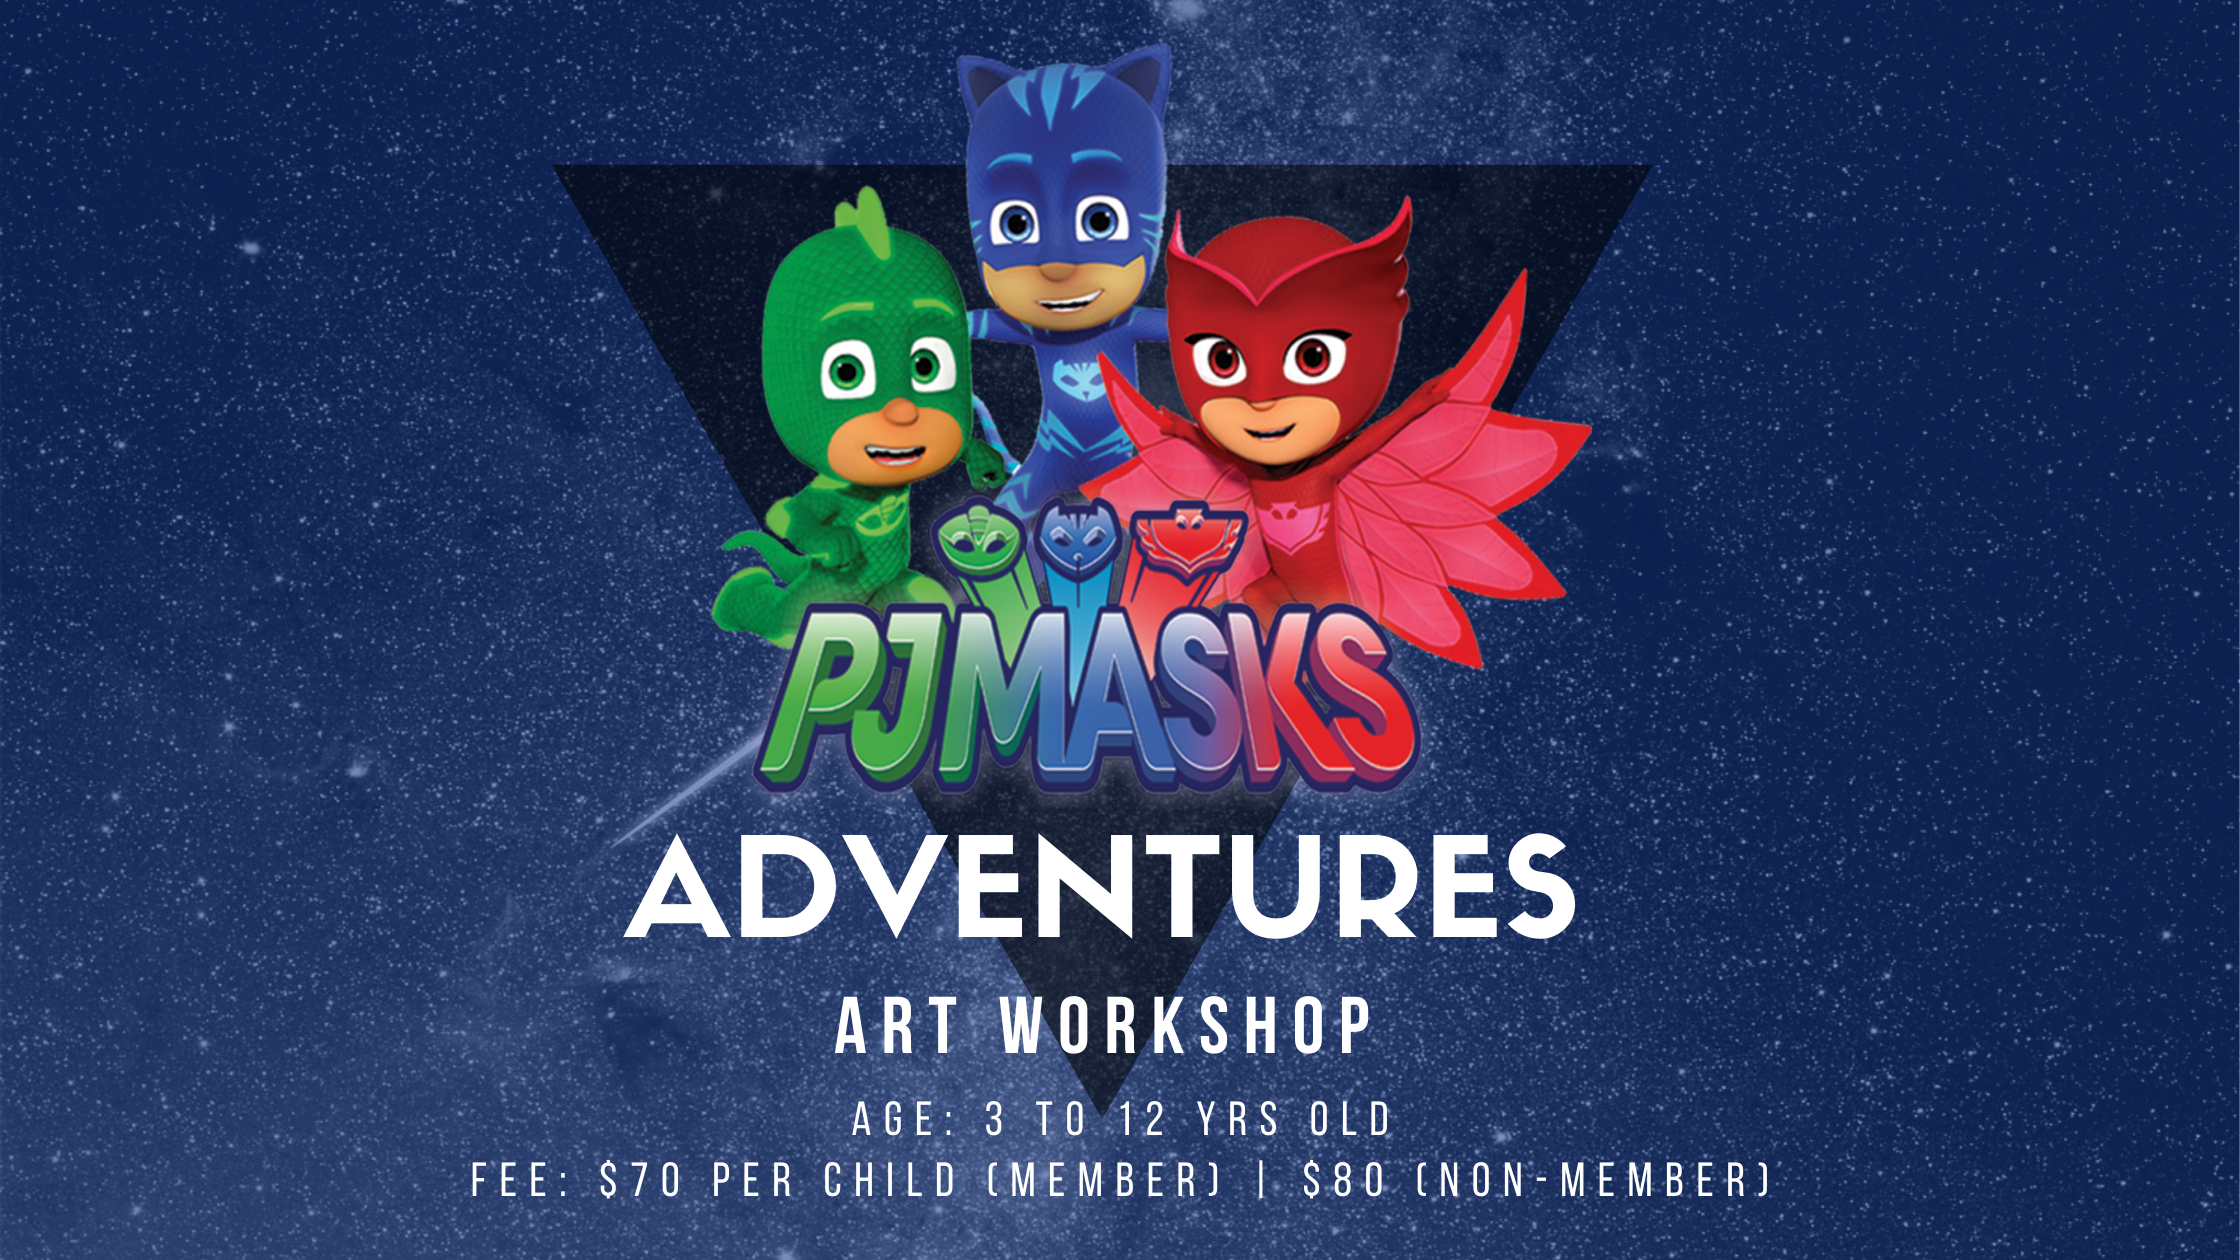 PJMASKS Adventures Art Workshop